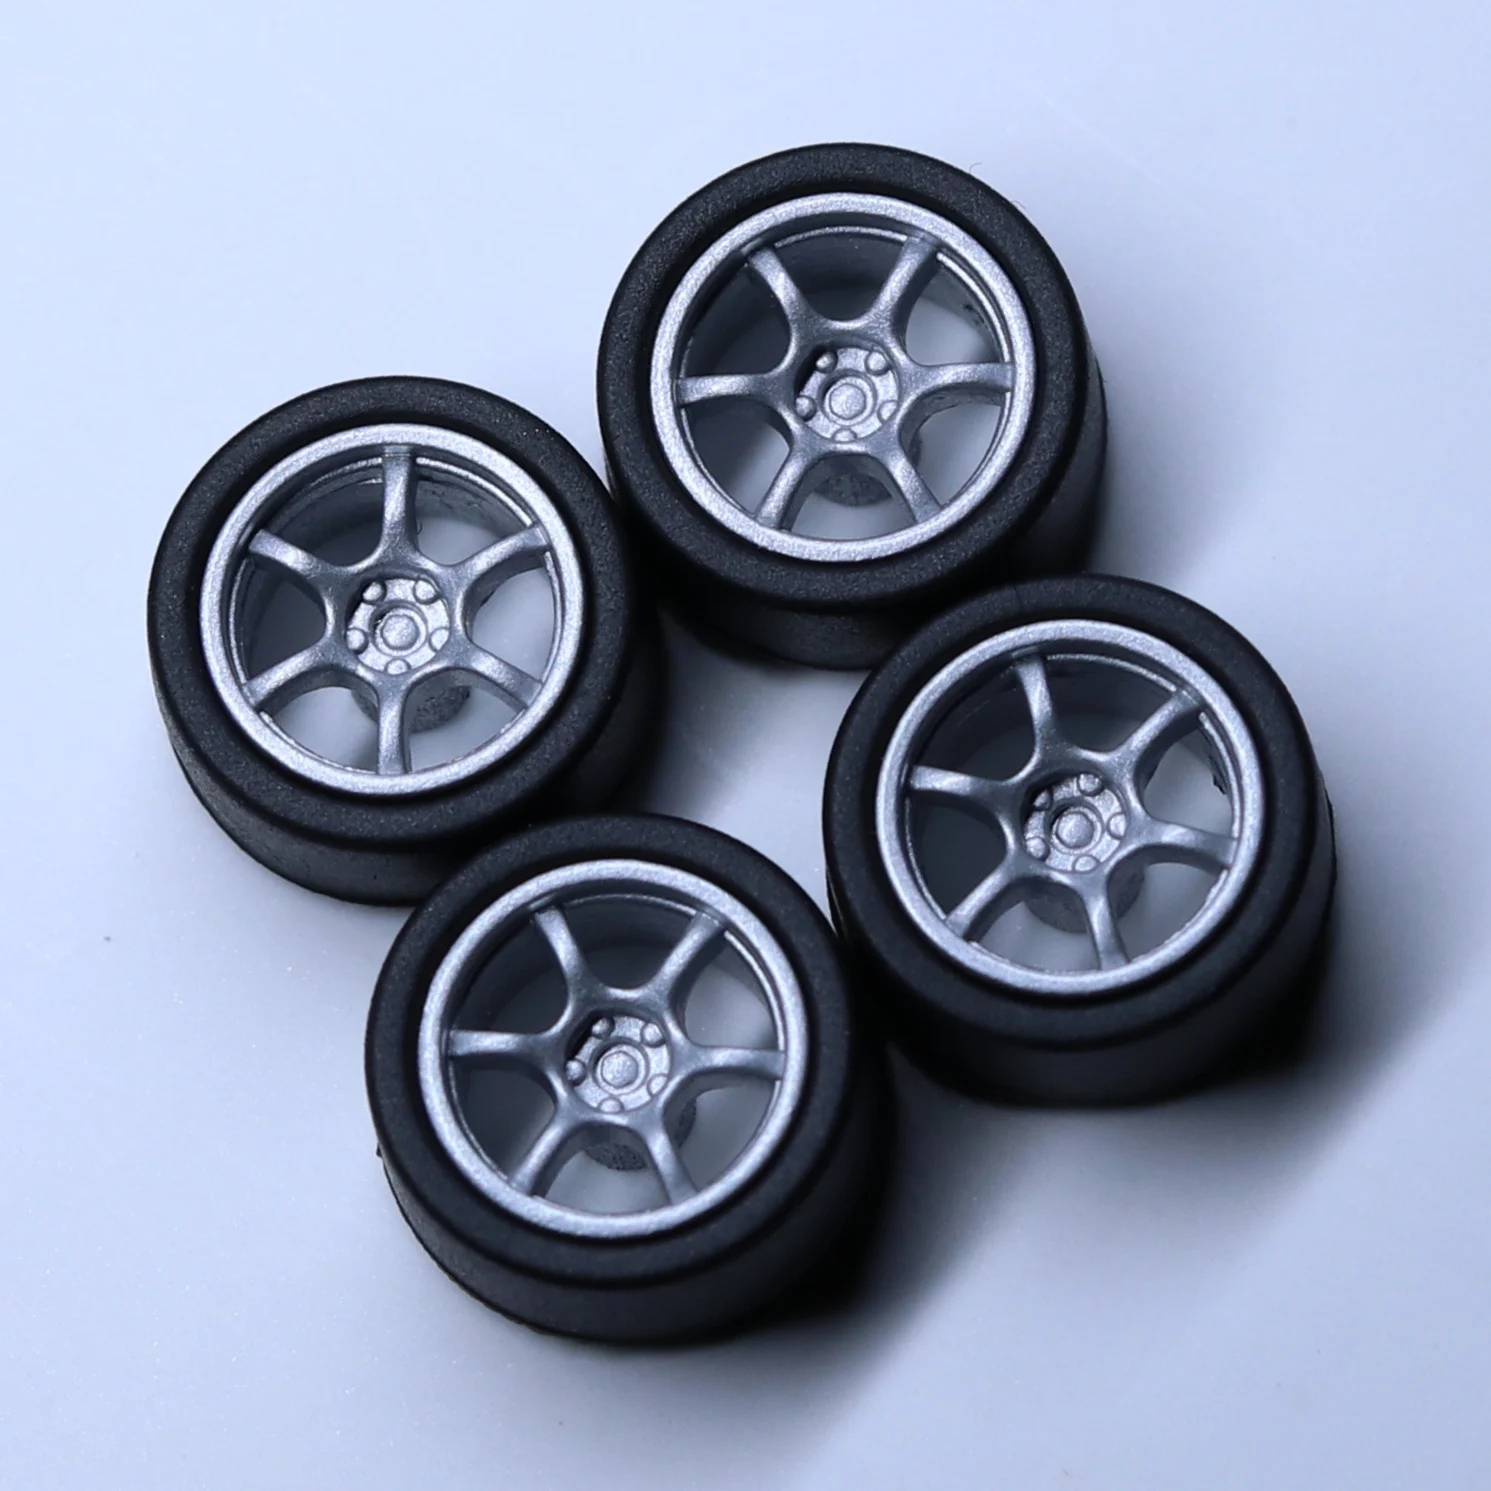 Speedcg 1/64 ABS -wielen met rubberen band type I1 gemodificeerde onderdelen Diameter 10 mm voor model auto racevoertuig speelgoed hotwheels tomica